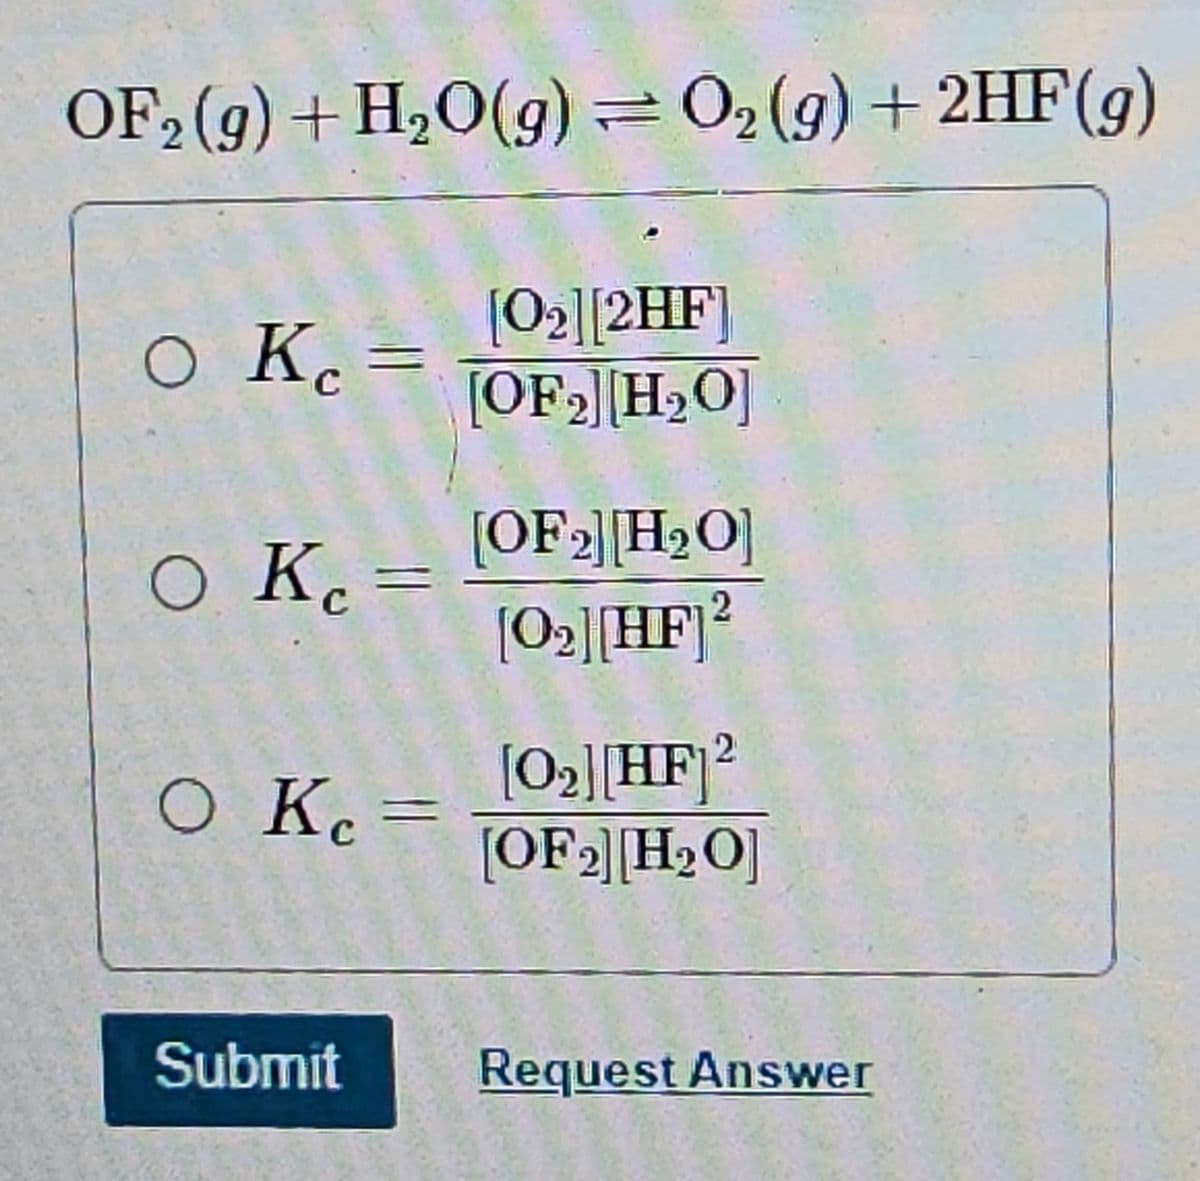 OF₂ (g) + H₂O(g) = O₂(g) + 2HF (9)
[0₂] [2HF]
[OF₂] [H₂O]
O Kc =
O K
O Kc =
Submit
[OF 2] [H₂O]
[0₂][HF] 2
[0₂][HF] 2
[OF ₂] [H₂O]
Request Answer